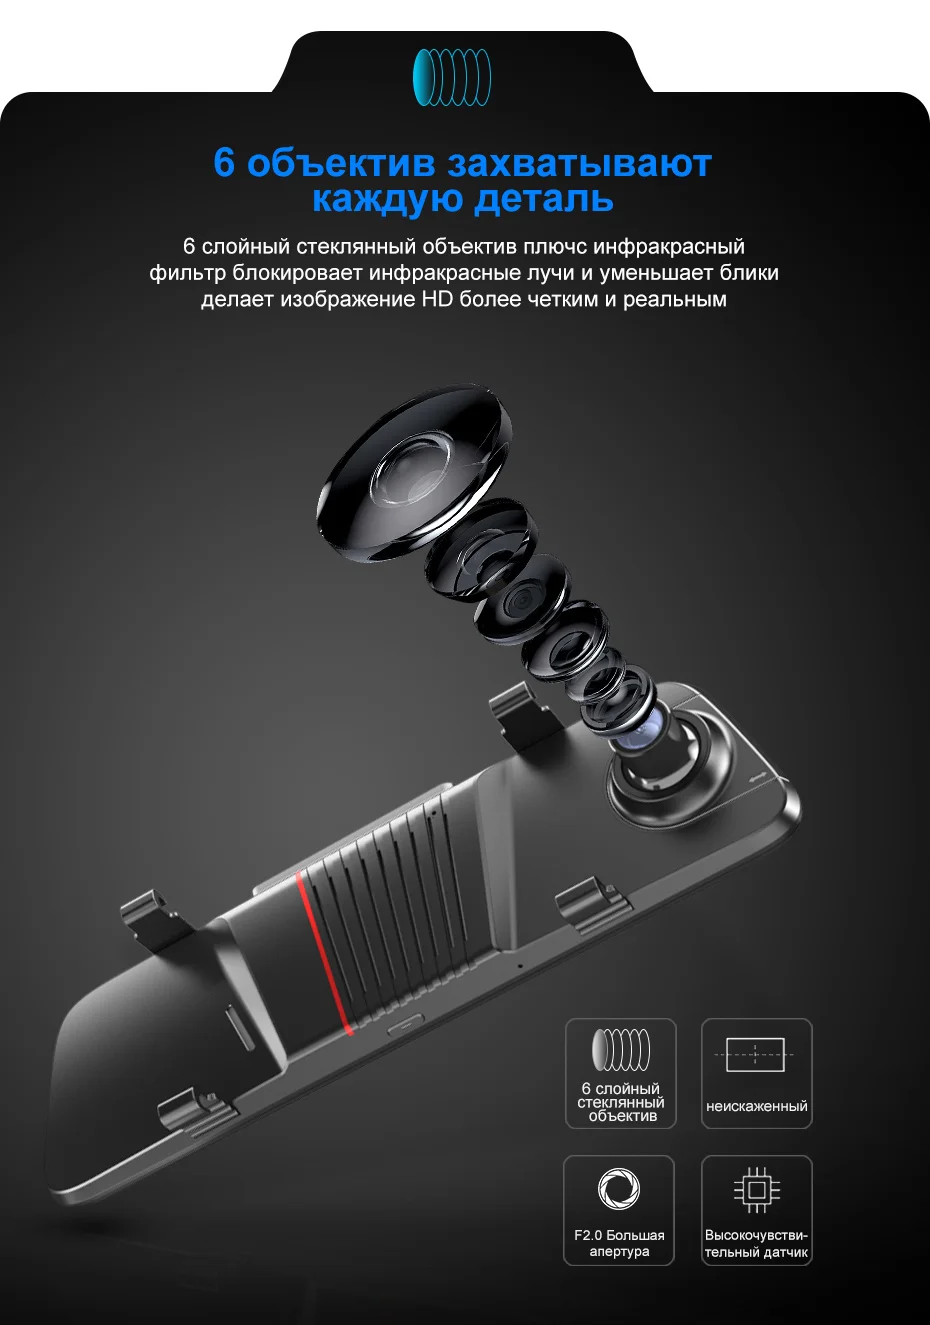 AWESAFE Автомобильный видеорегистратор Камера 10 ''ips 2.5D FHD 1080P поток зеркало заднего вида привод видео регистратор ночное видение авто видеорегистратор